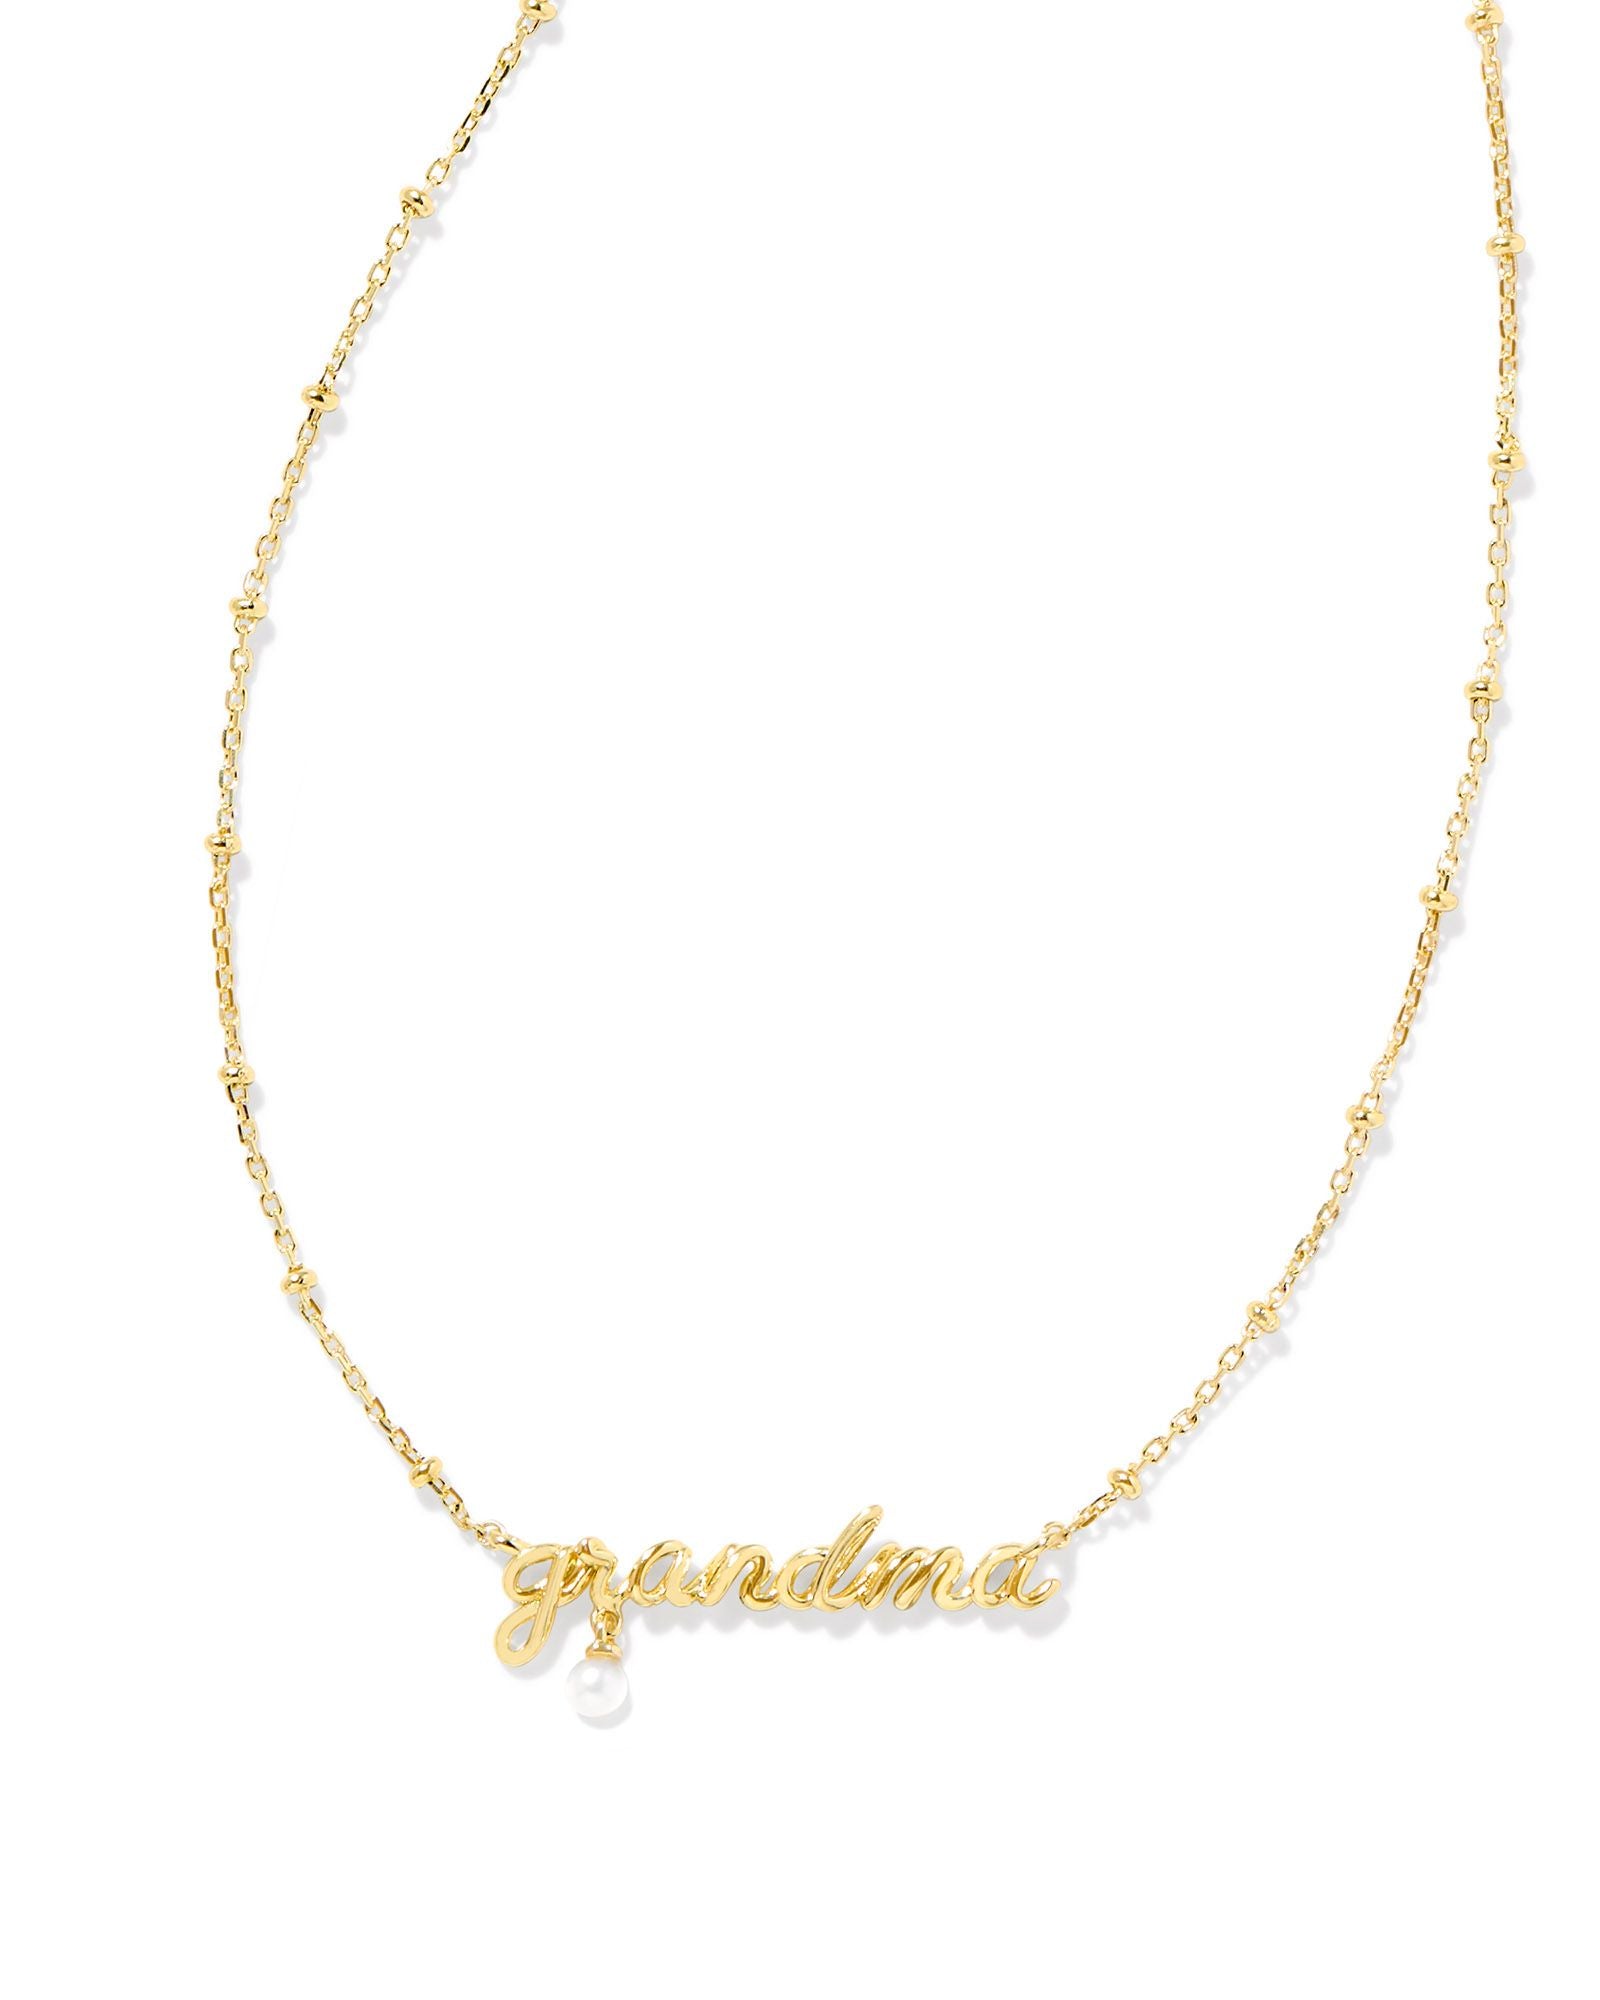 Grandma Script Pendant Necklace Gold w/White Pearl